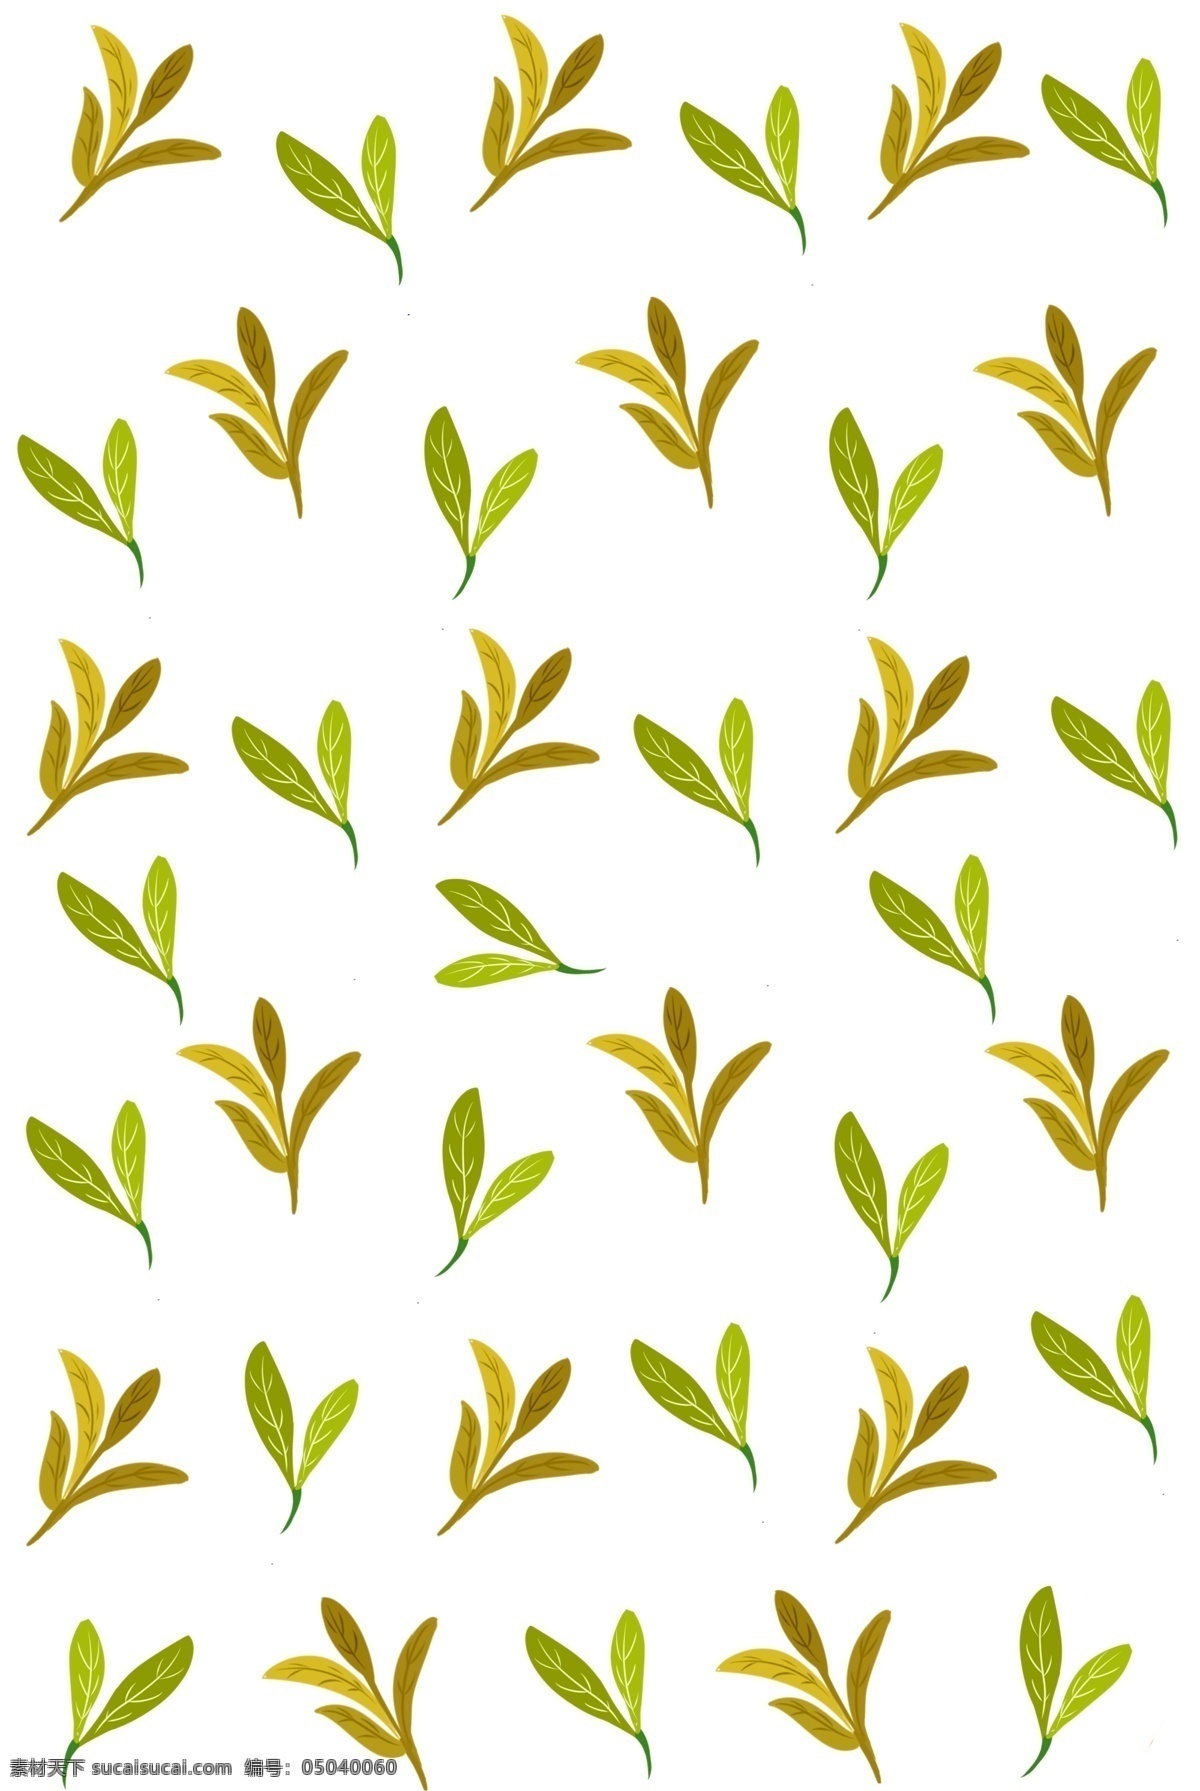 手绘 秋季 树叶 底纹 秋季树叶底纹 绿色 绿叶底纹 底纹装饰 植物底纹 叶子底纹装饰